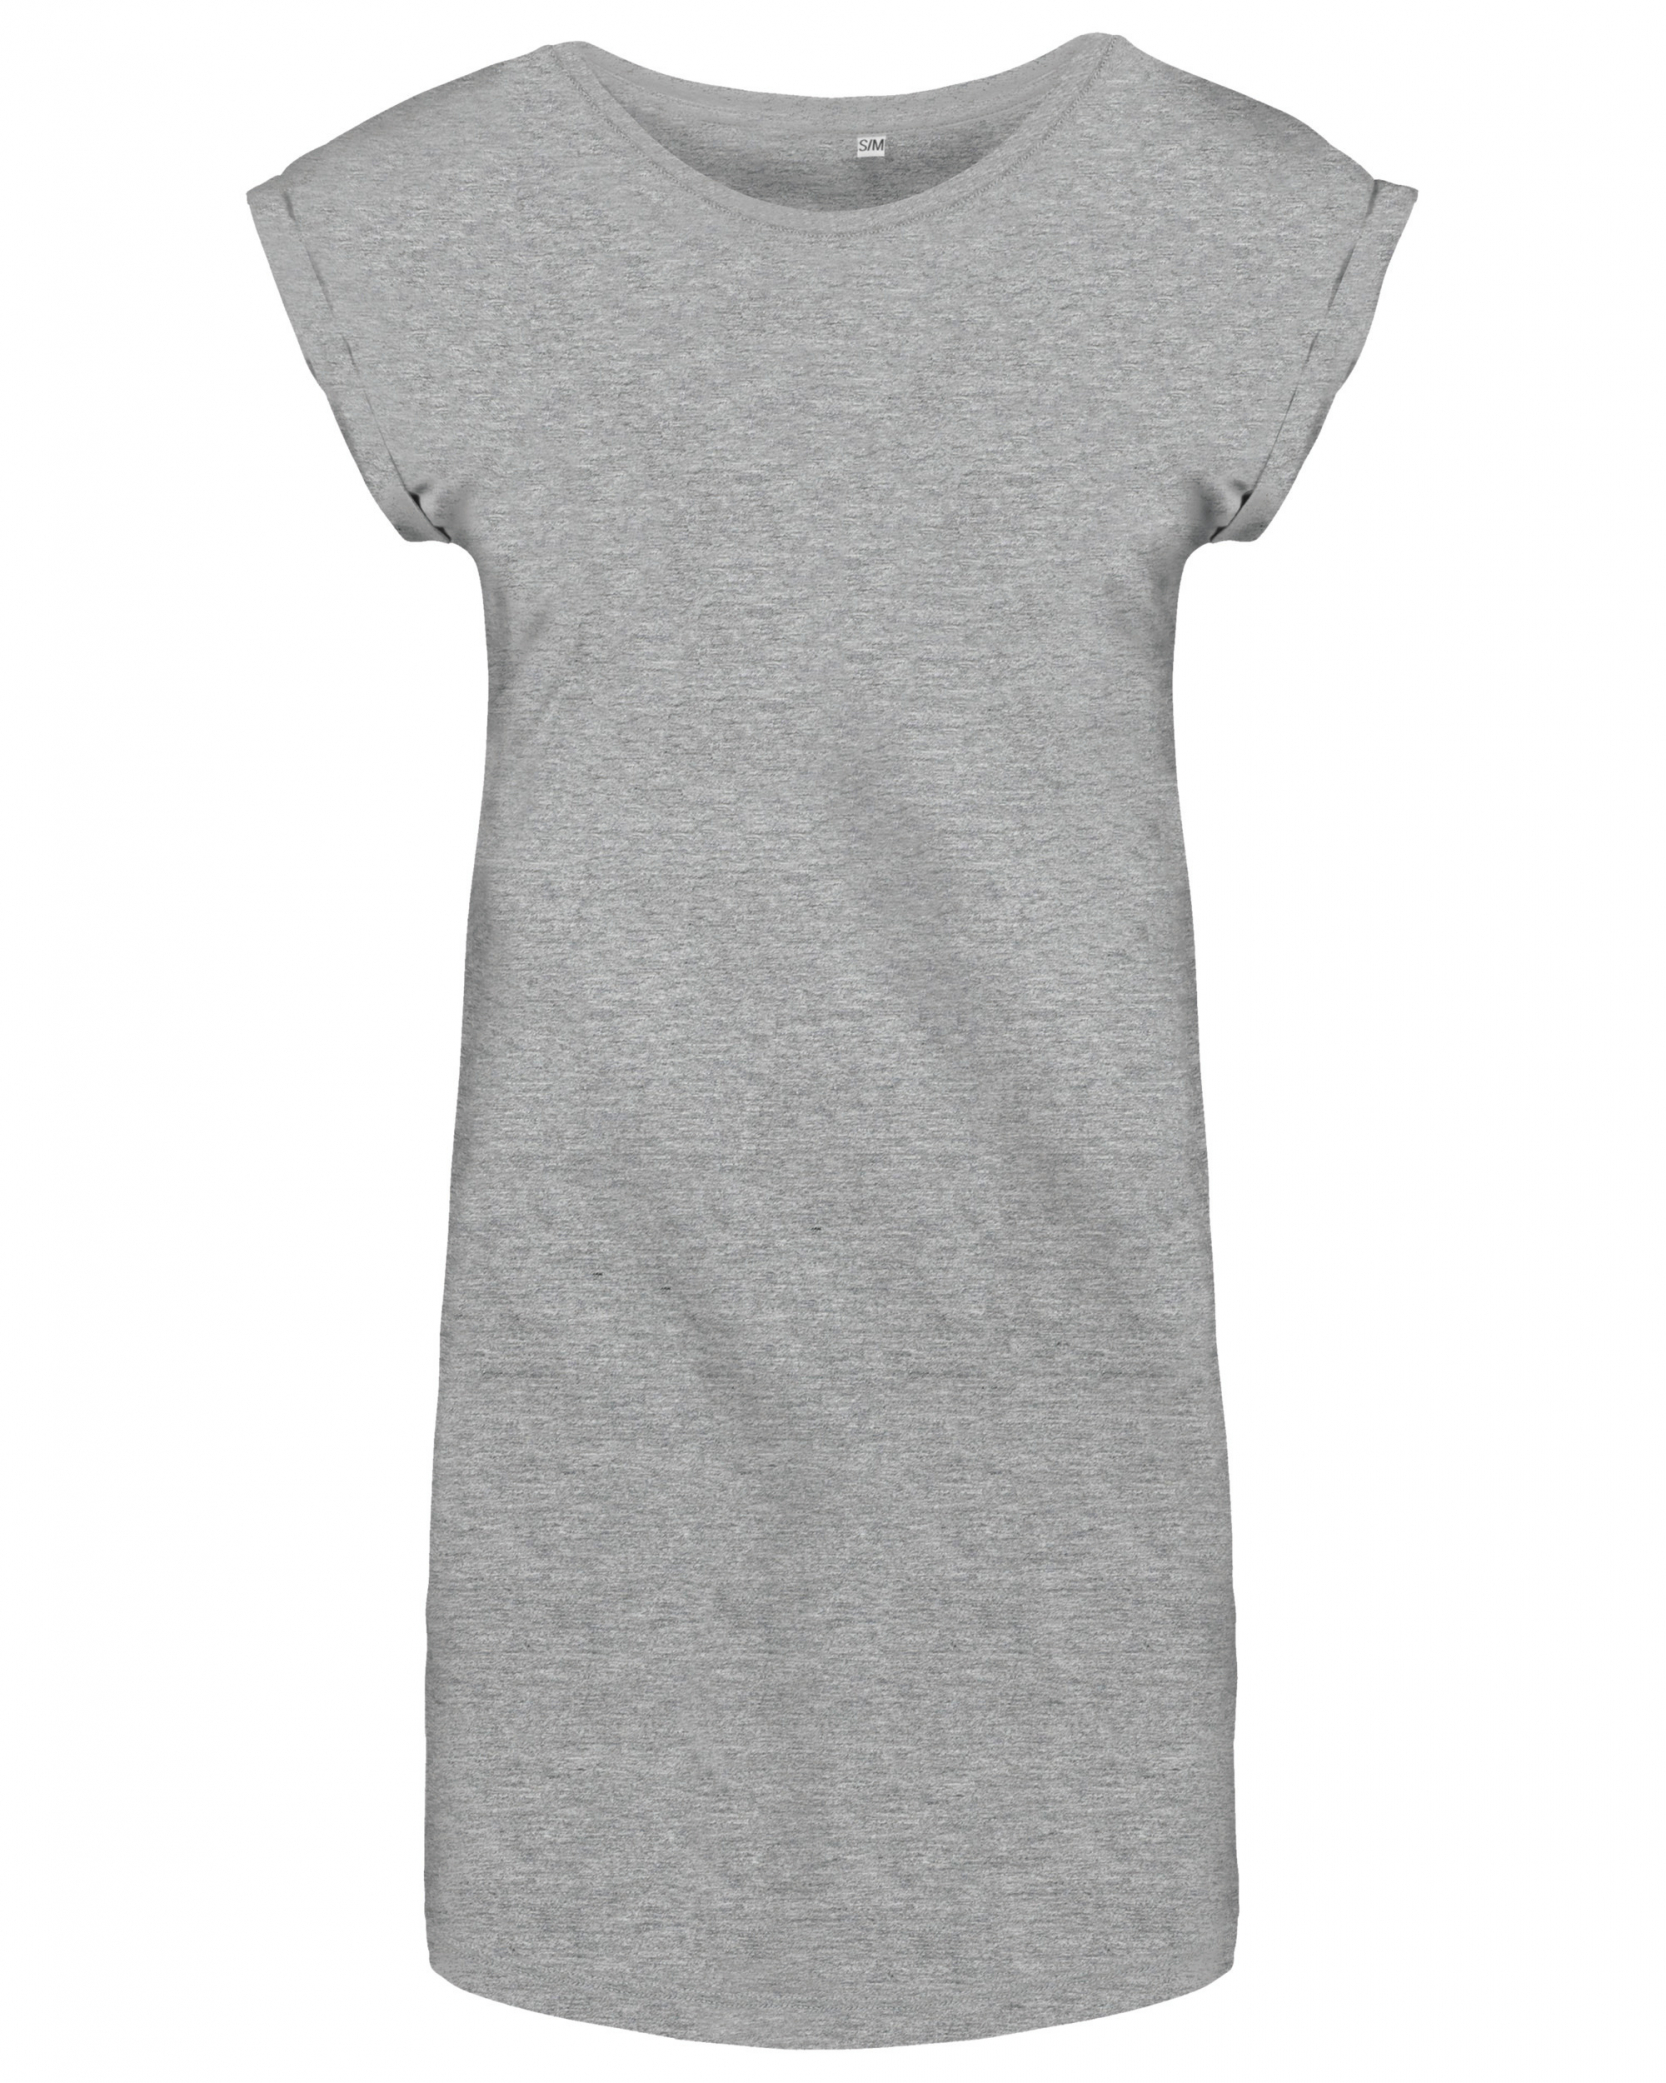 Dámské dlouhé tričko - šaty Barva: světle šedý melír, Velikost: L/XL